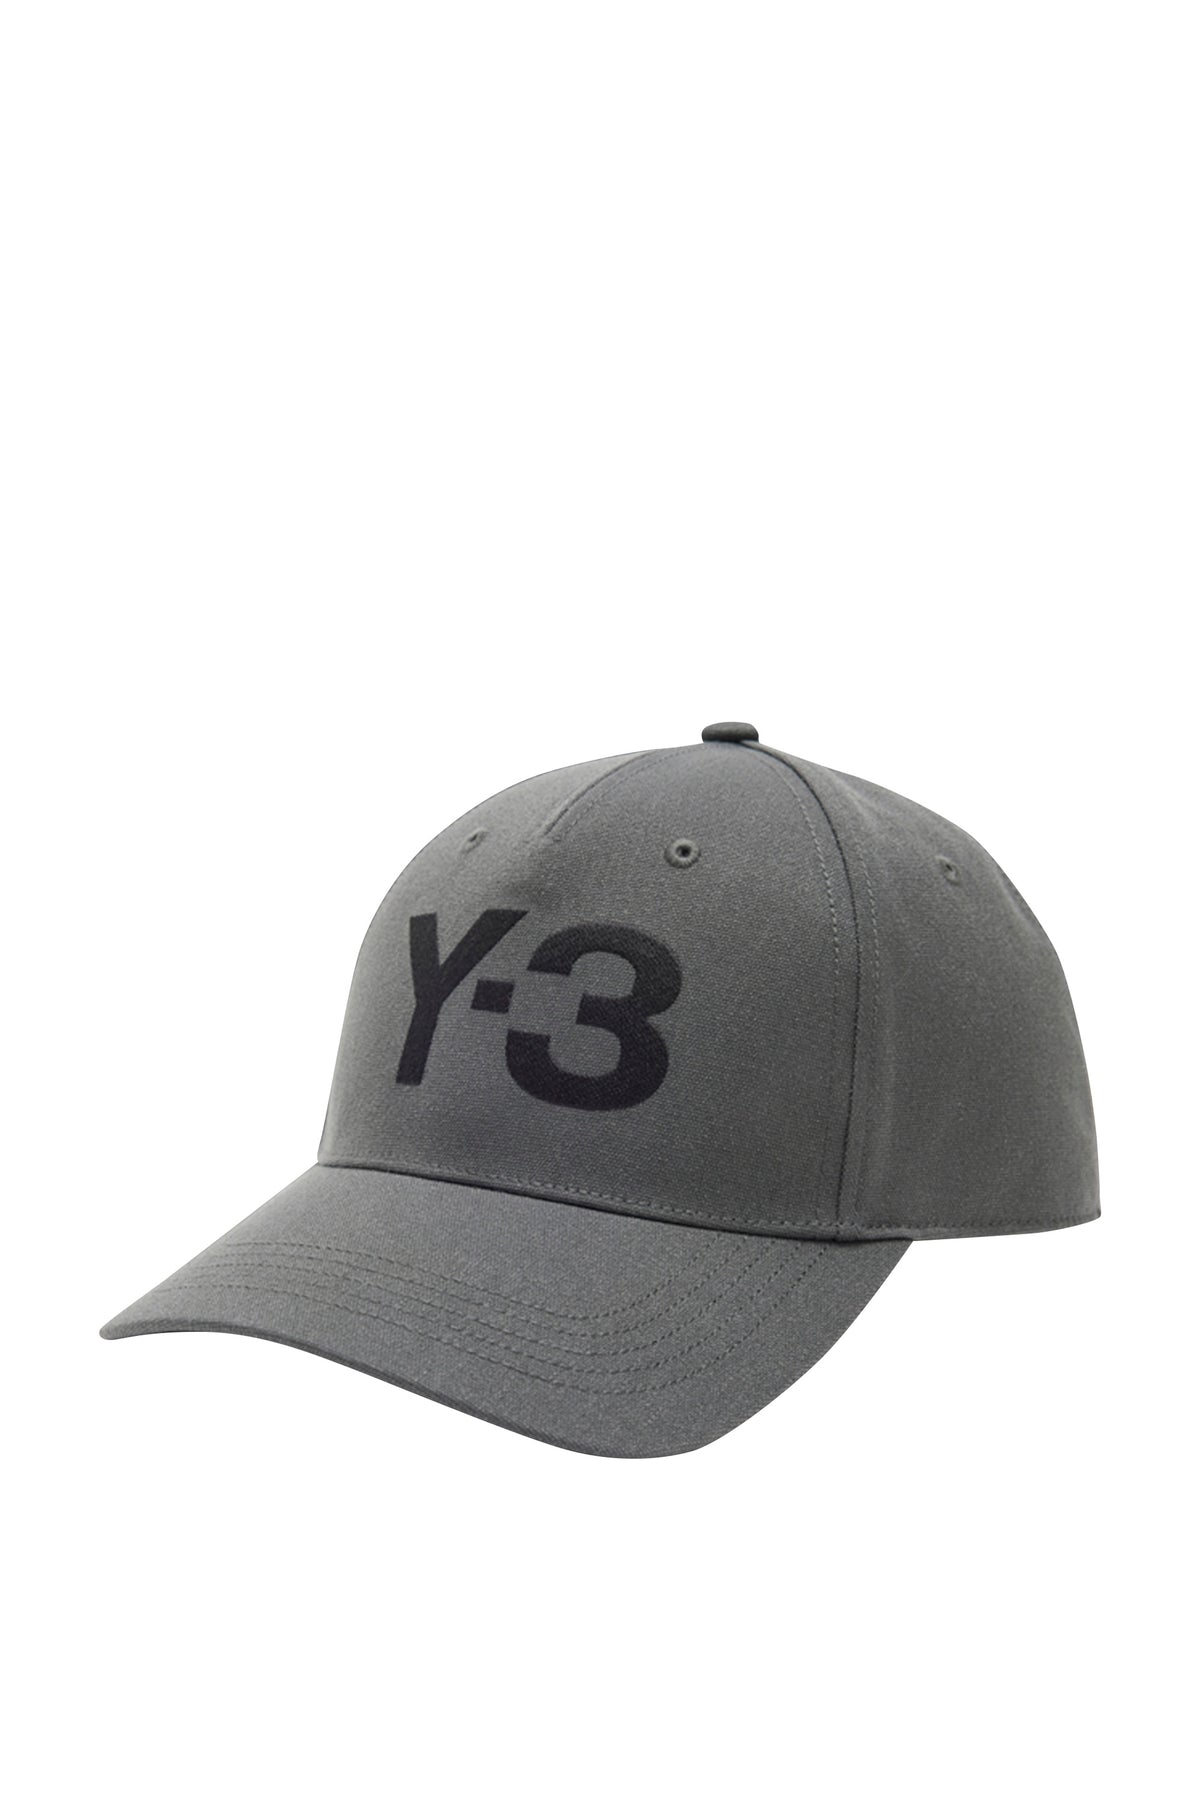 Y-3 LOGO CAP / DGH SOLID GRY